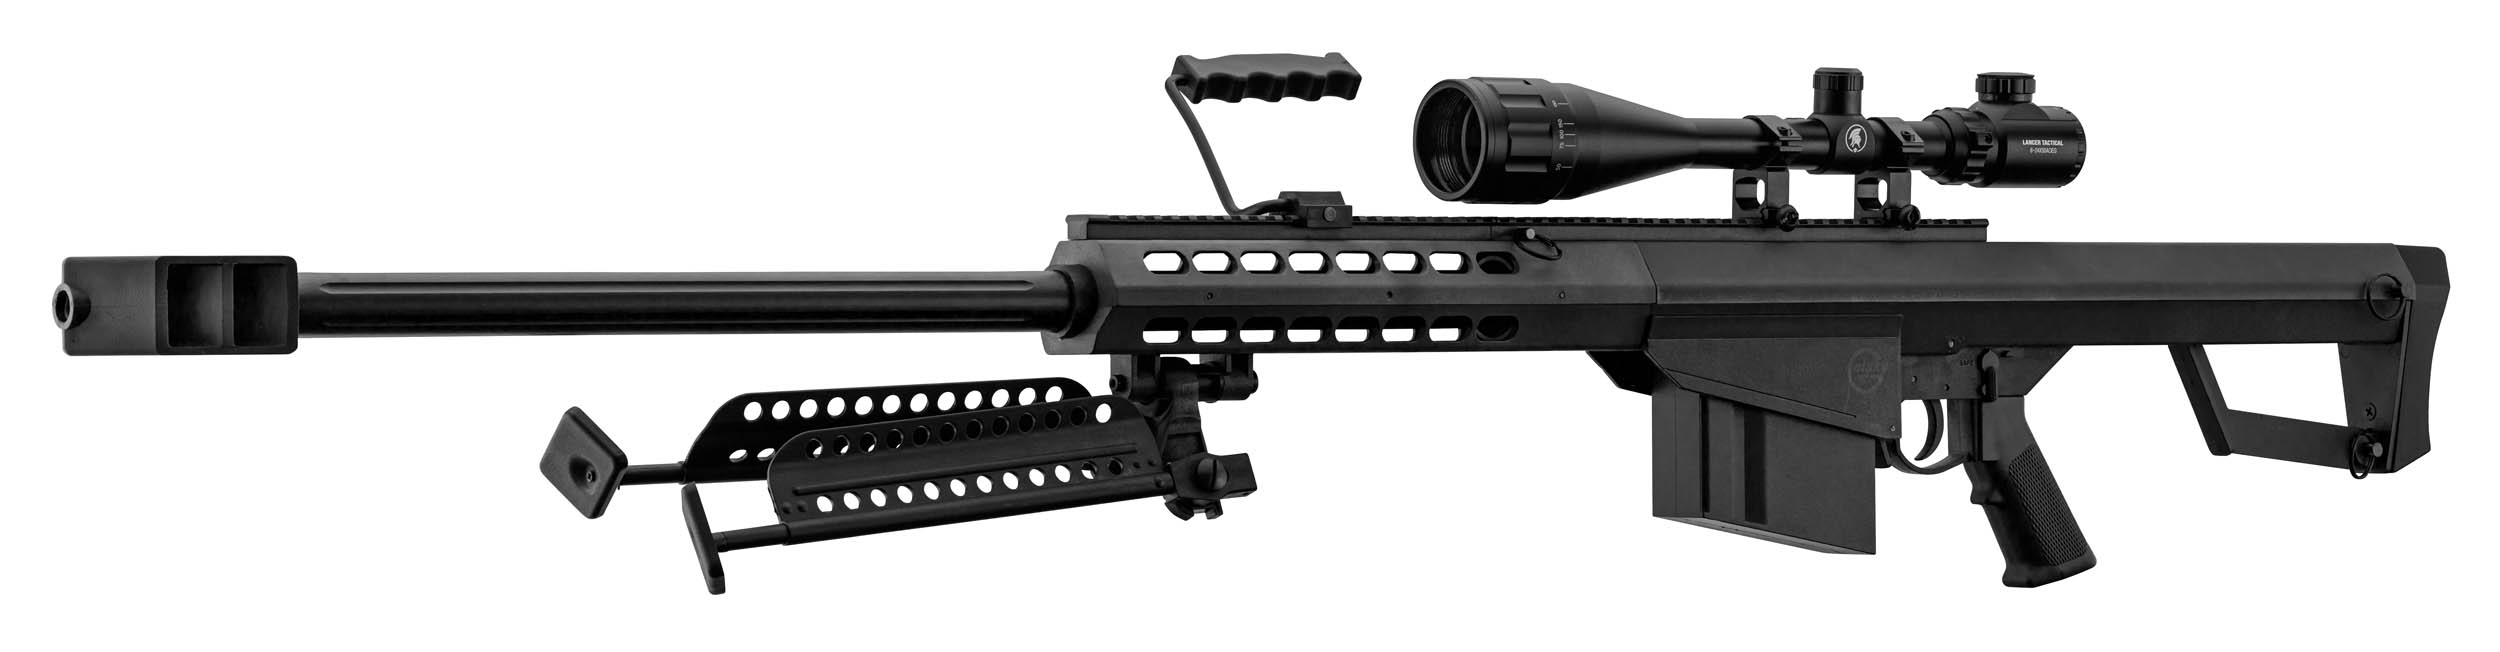 PCKLR3050-07 Pack Sniper LT-20 noir M82 1,5J + lunette + bi-pied + poignée - PCKLR3050